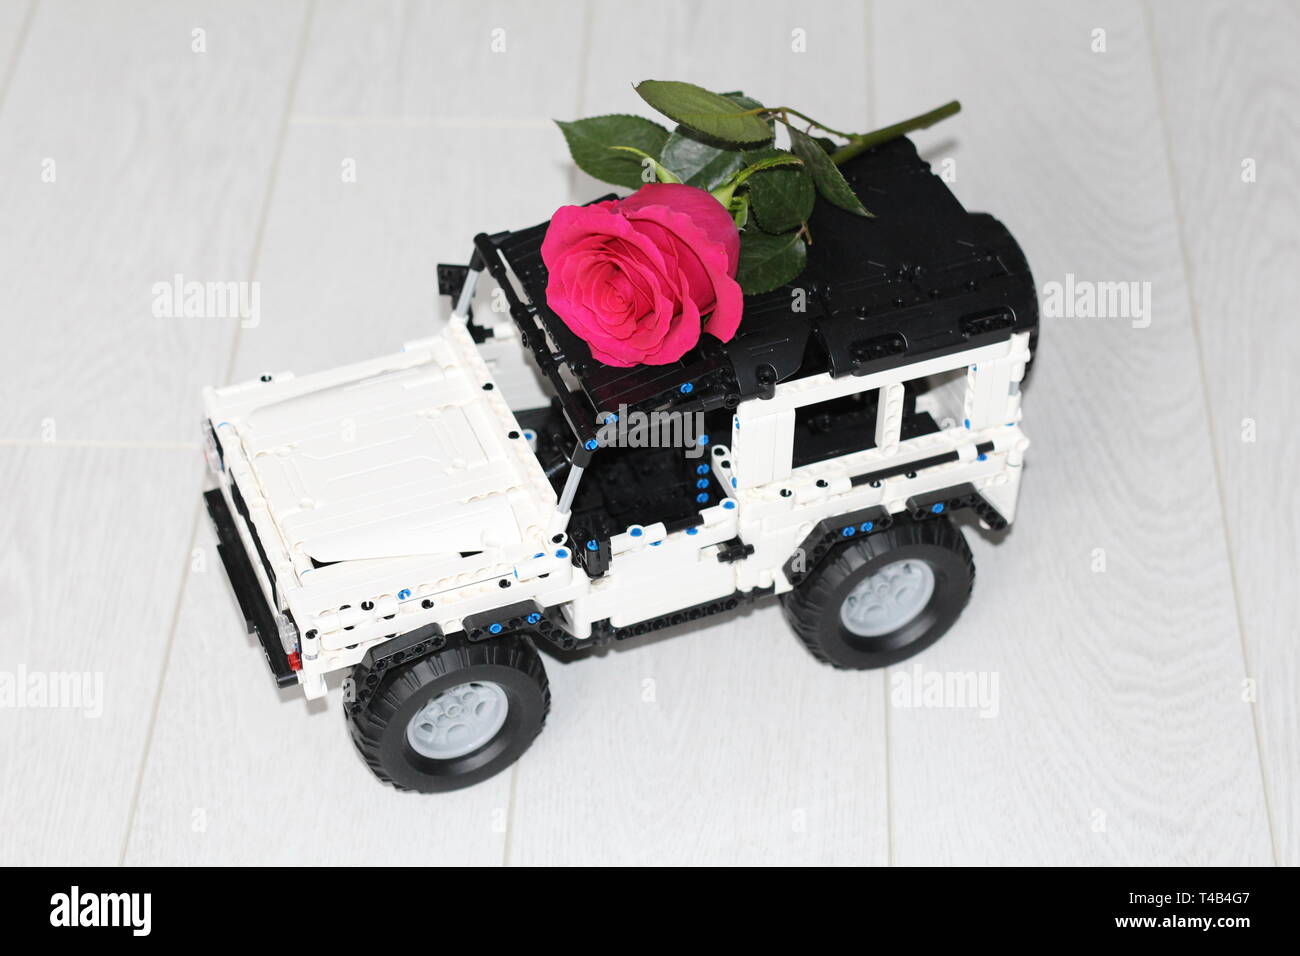 Das Spielzeug Auto SUV trägt eine rote Rose. Das Auto ist der Designer gemacht, es ist schwarz und weiß. Blume Lieferung. Stockfoto